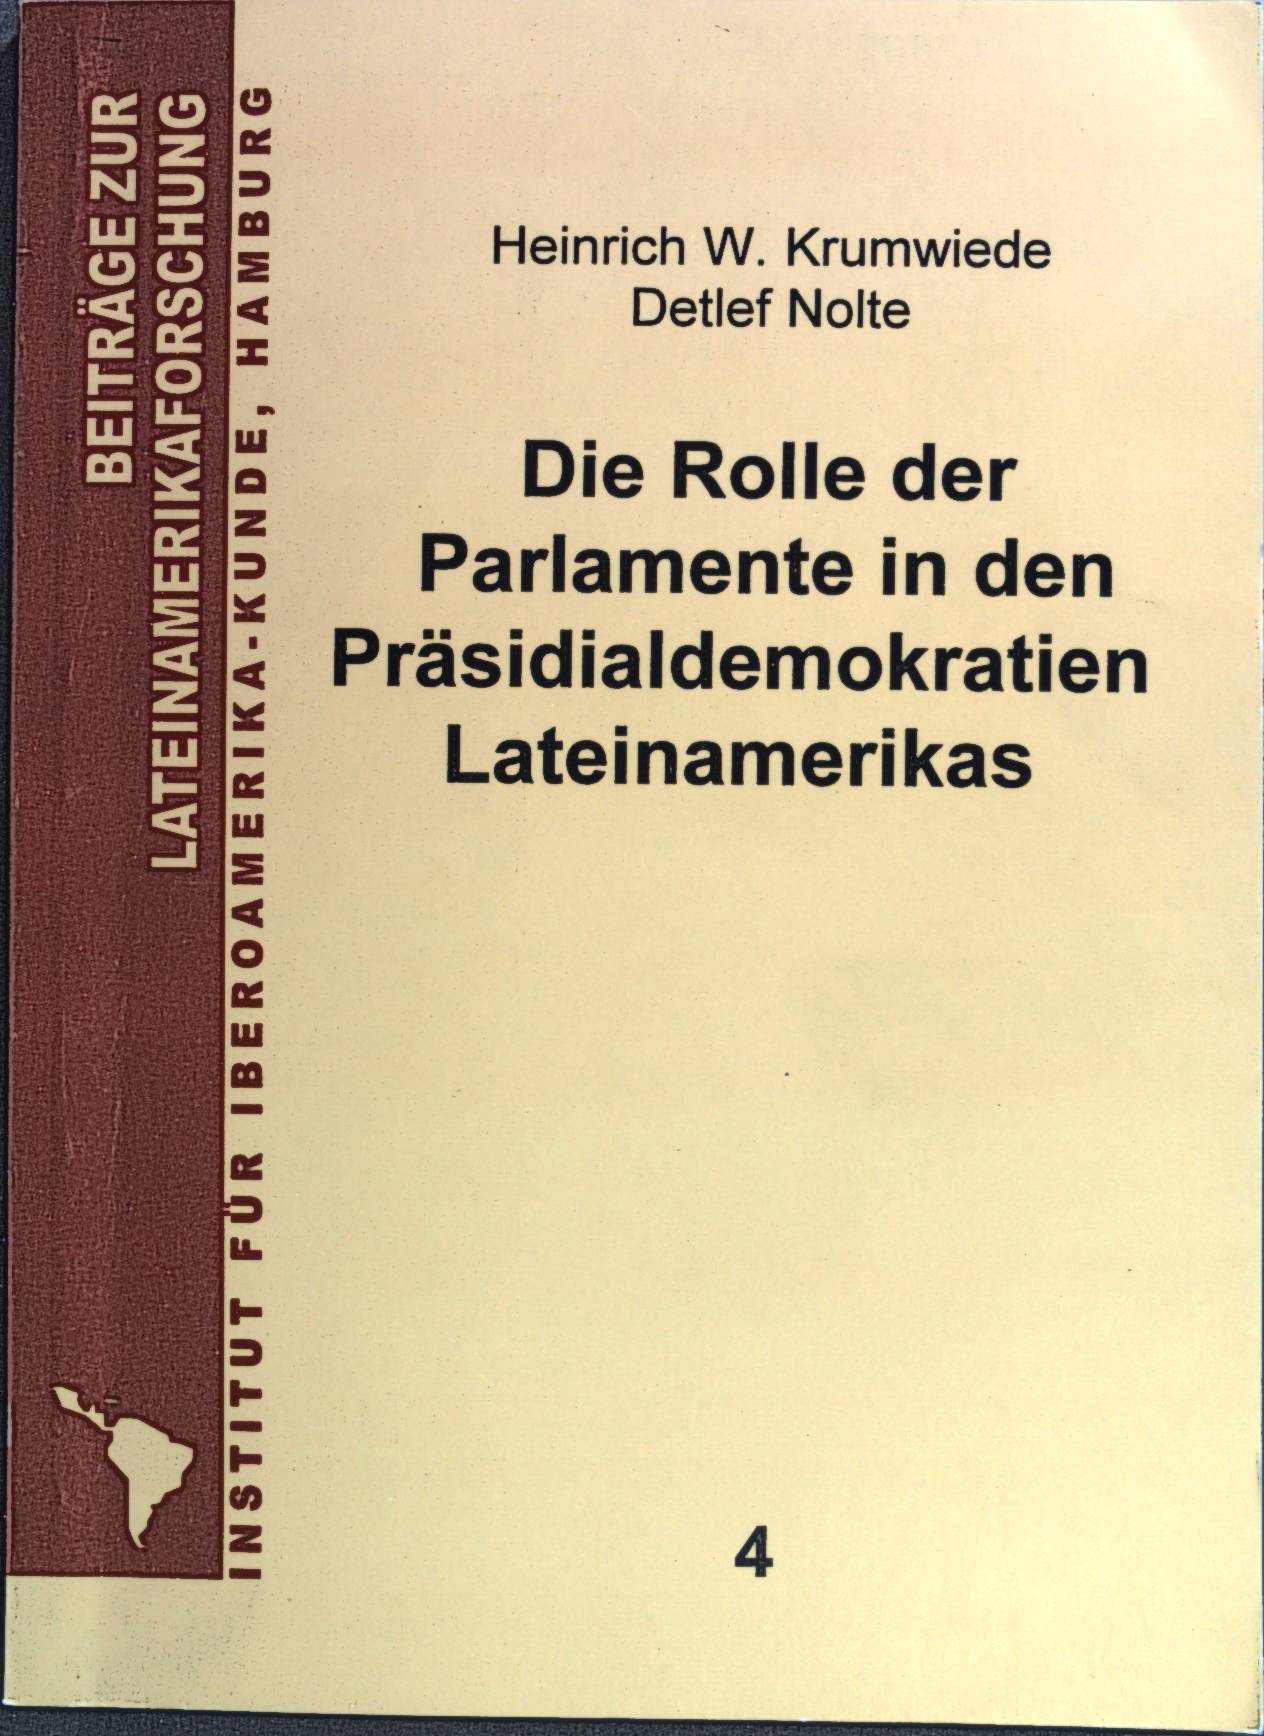 Die Rolle der Parlamente in den Präsidialdemokratien Lateinamerikas. Beiträge zur Lateinamerika-Forschung ; Bd. 4 - Krumwiede, Heinrich-W. und Detlef Nolte